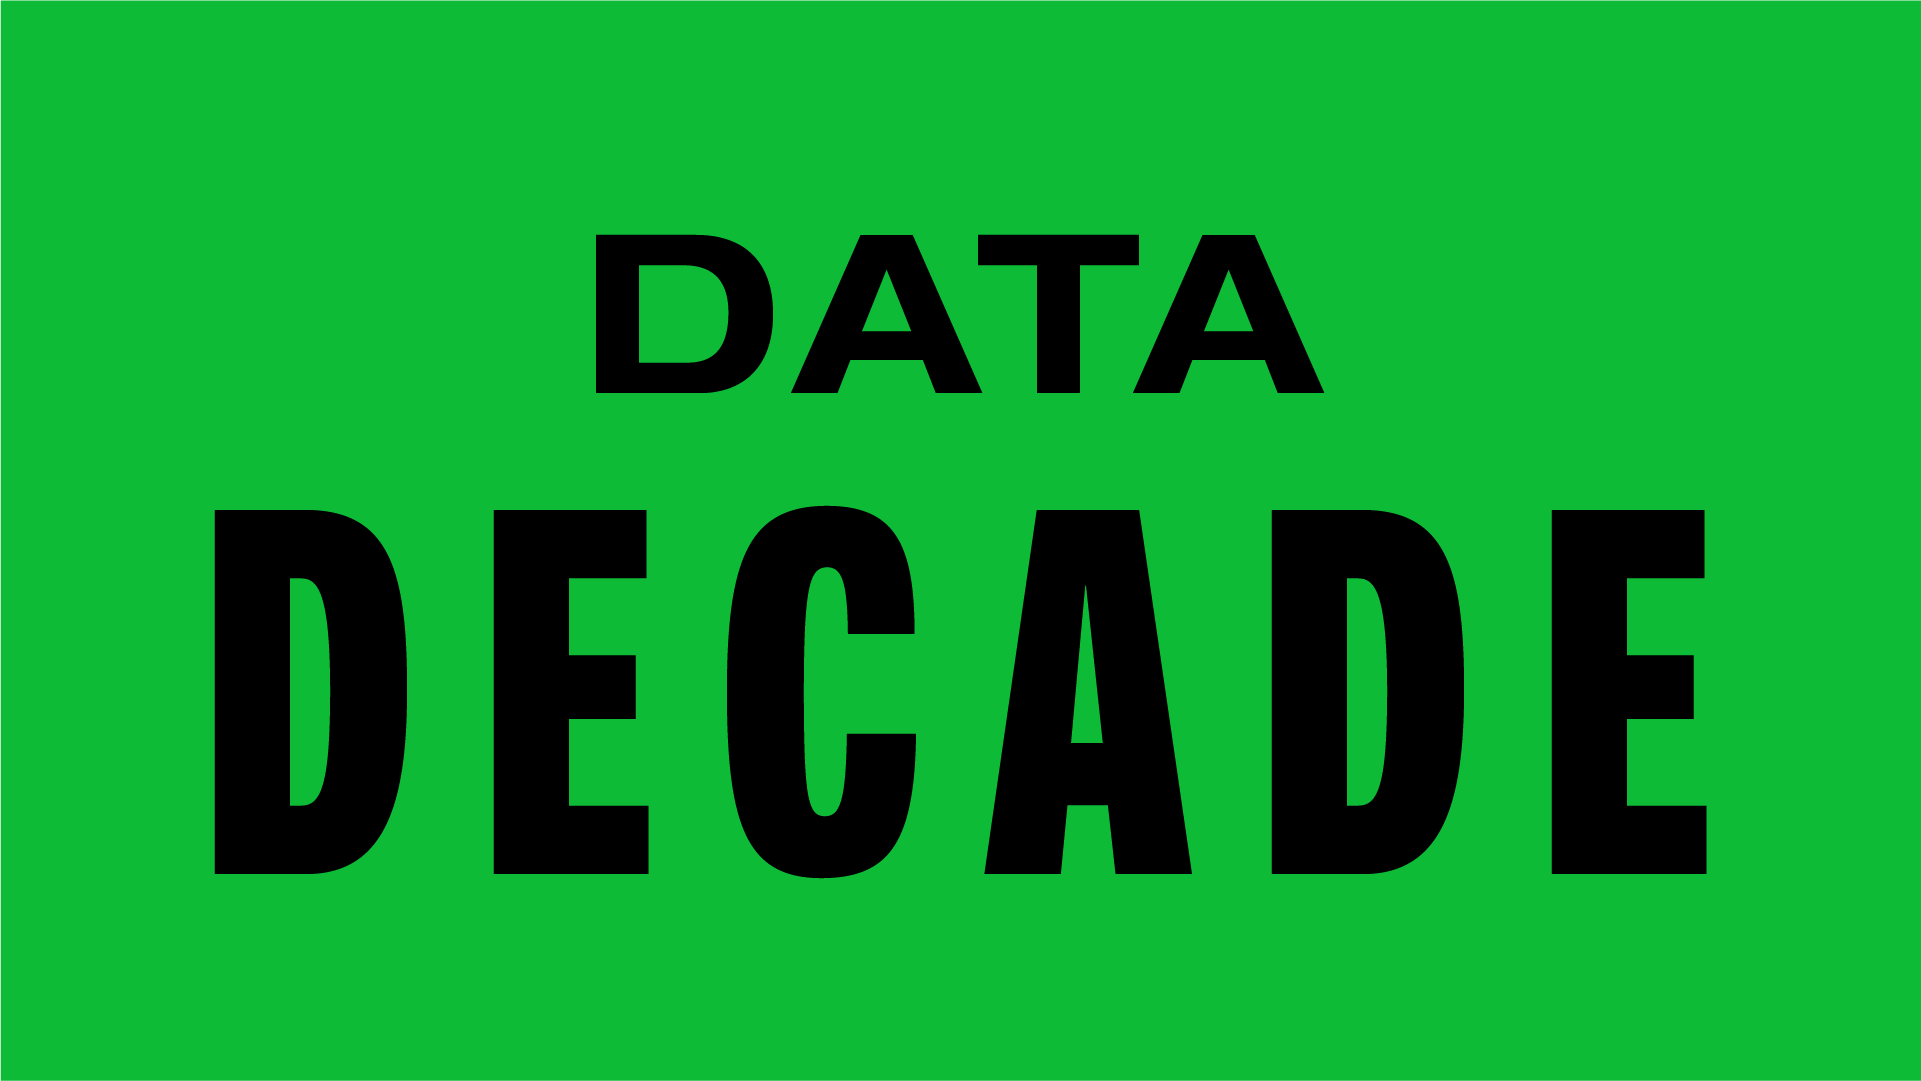 Data Decade at the ODI